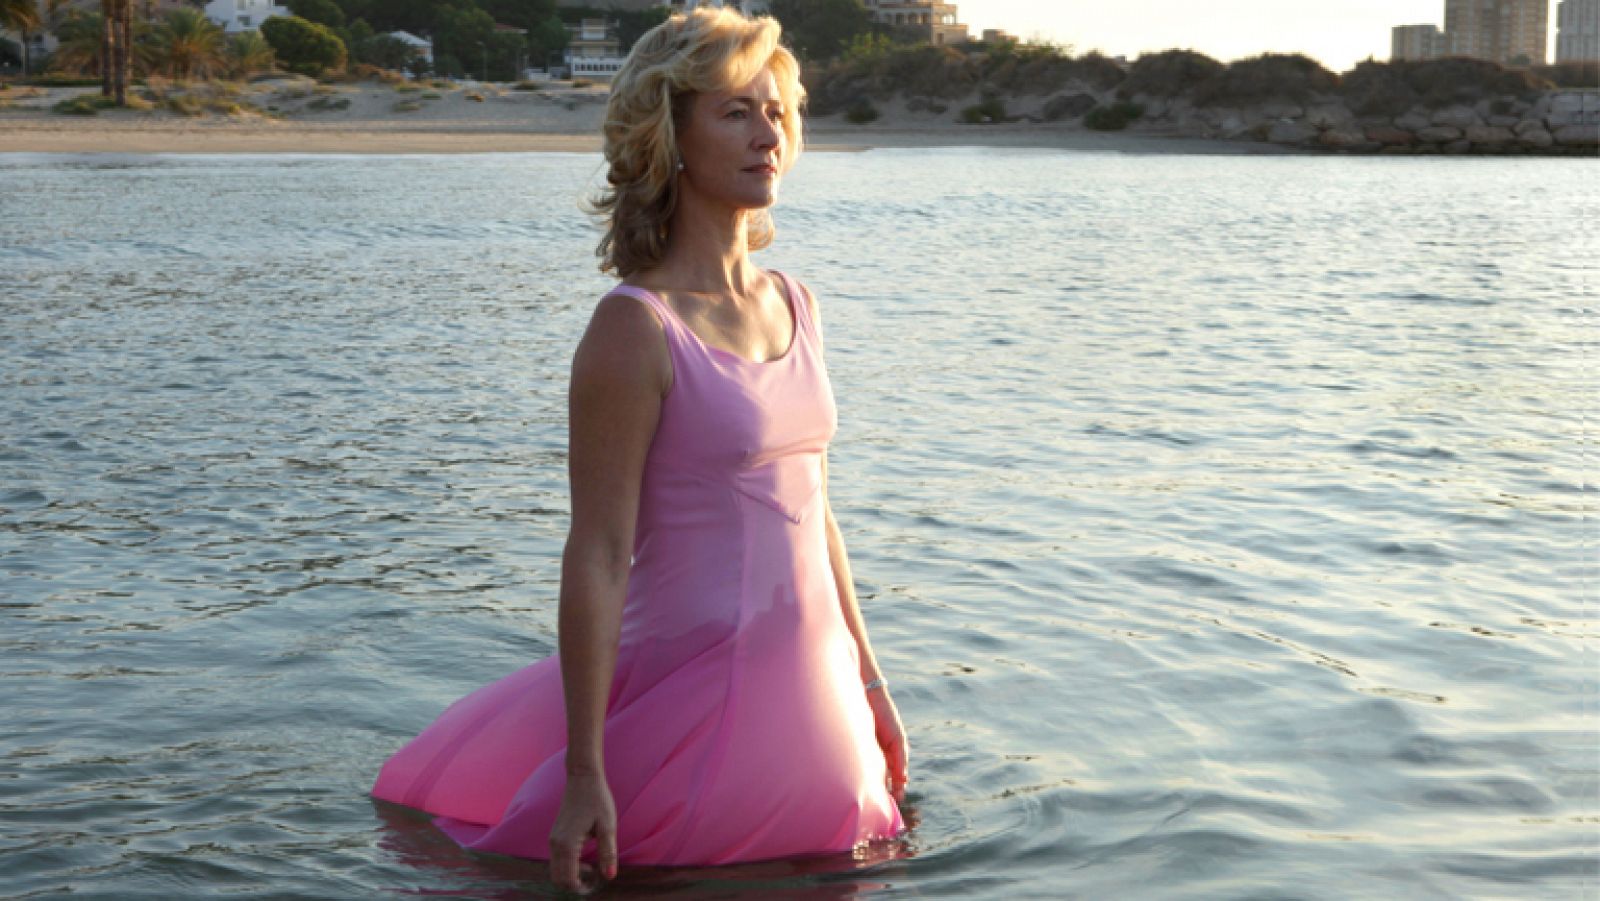 "La mujer y la tierra" ha concluido con una escena que ya apunta a convertirse en la más memorable de la temporada: Mercedes, con un vestido rosa, recorre una playa solitaria y se adentra en el mar, lentamente, mientras despunta el día. De fondo, la